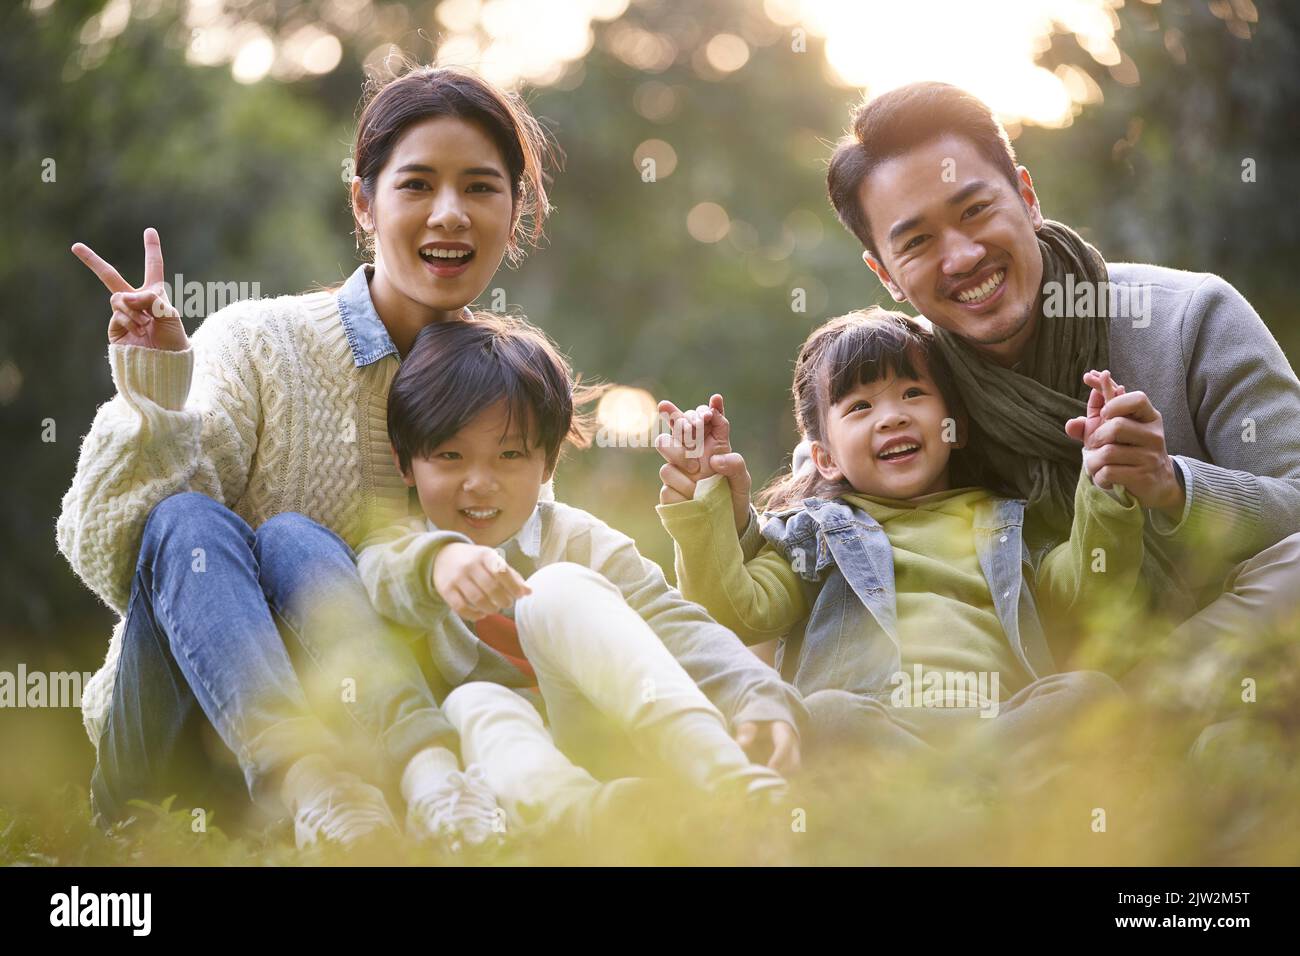 retrato al aire libre de una joven familia asiática feliz con dos niños sentados en la hierba en el parque Foto de stock